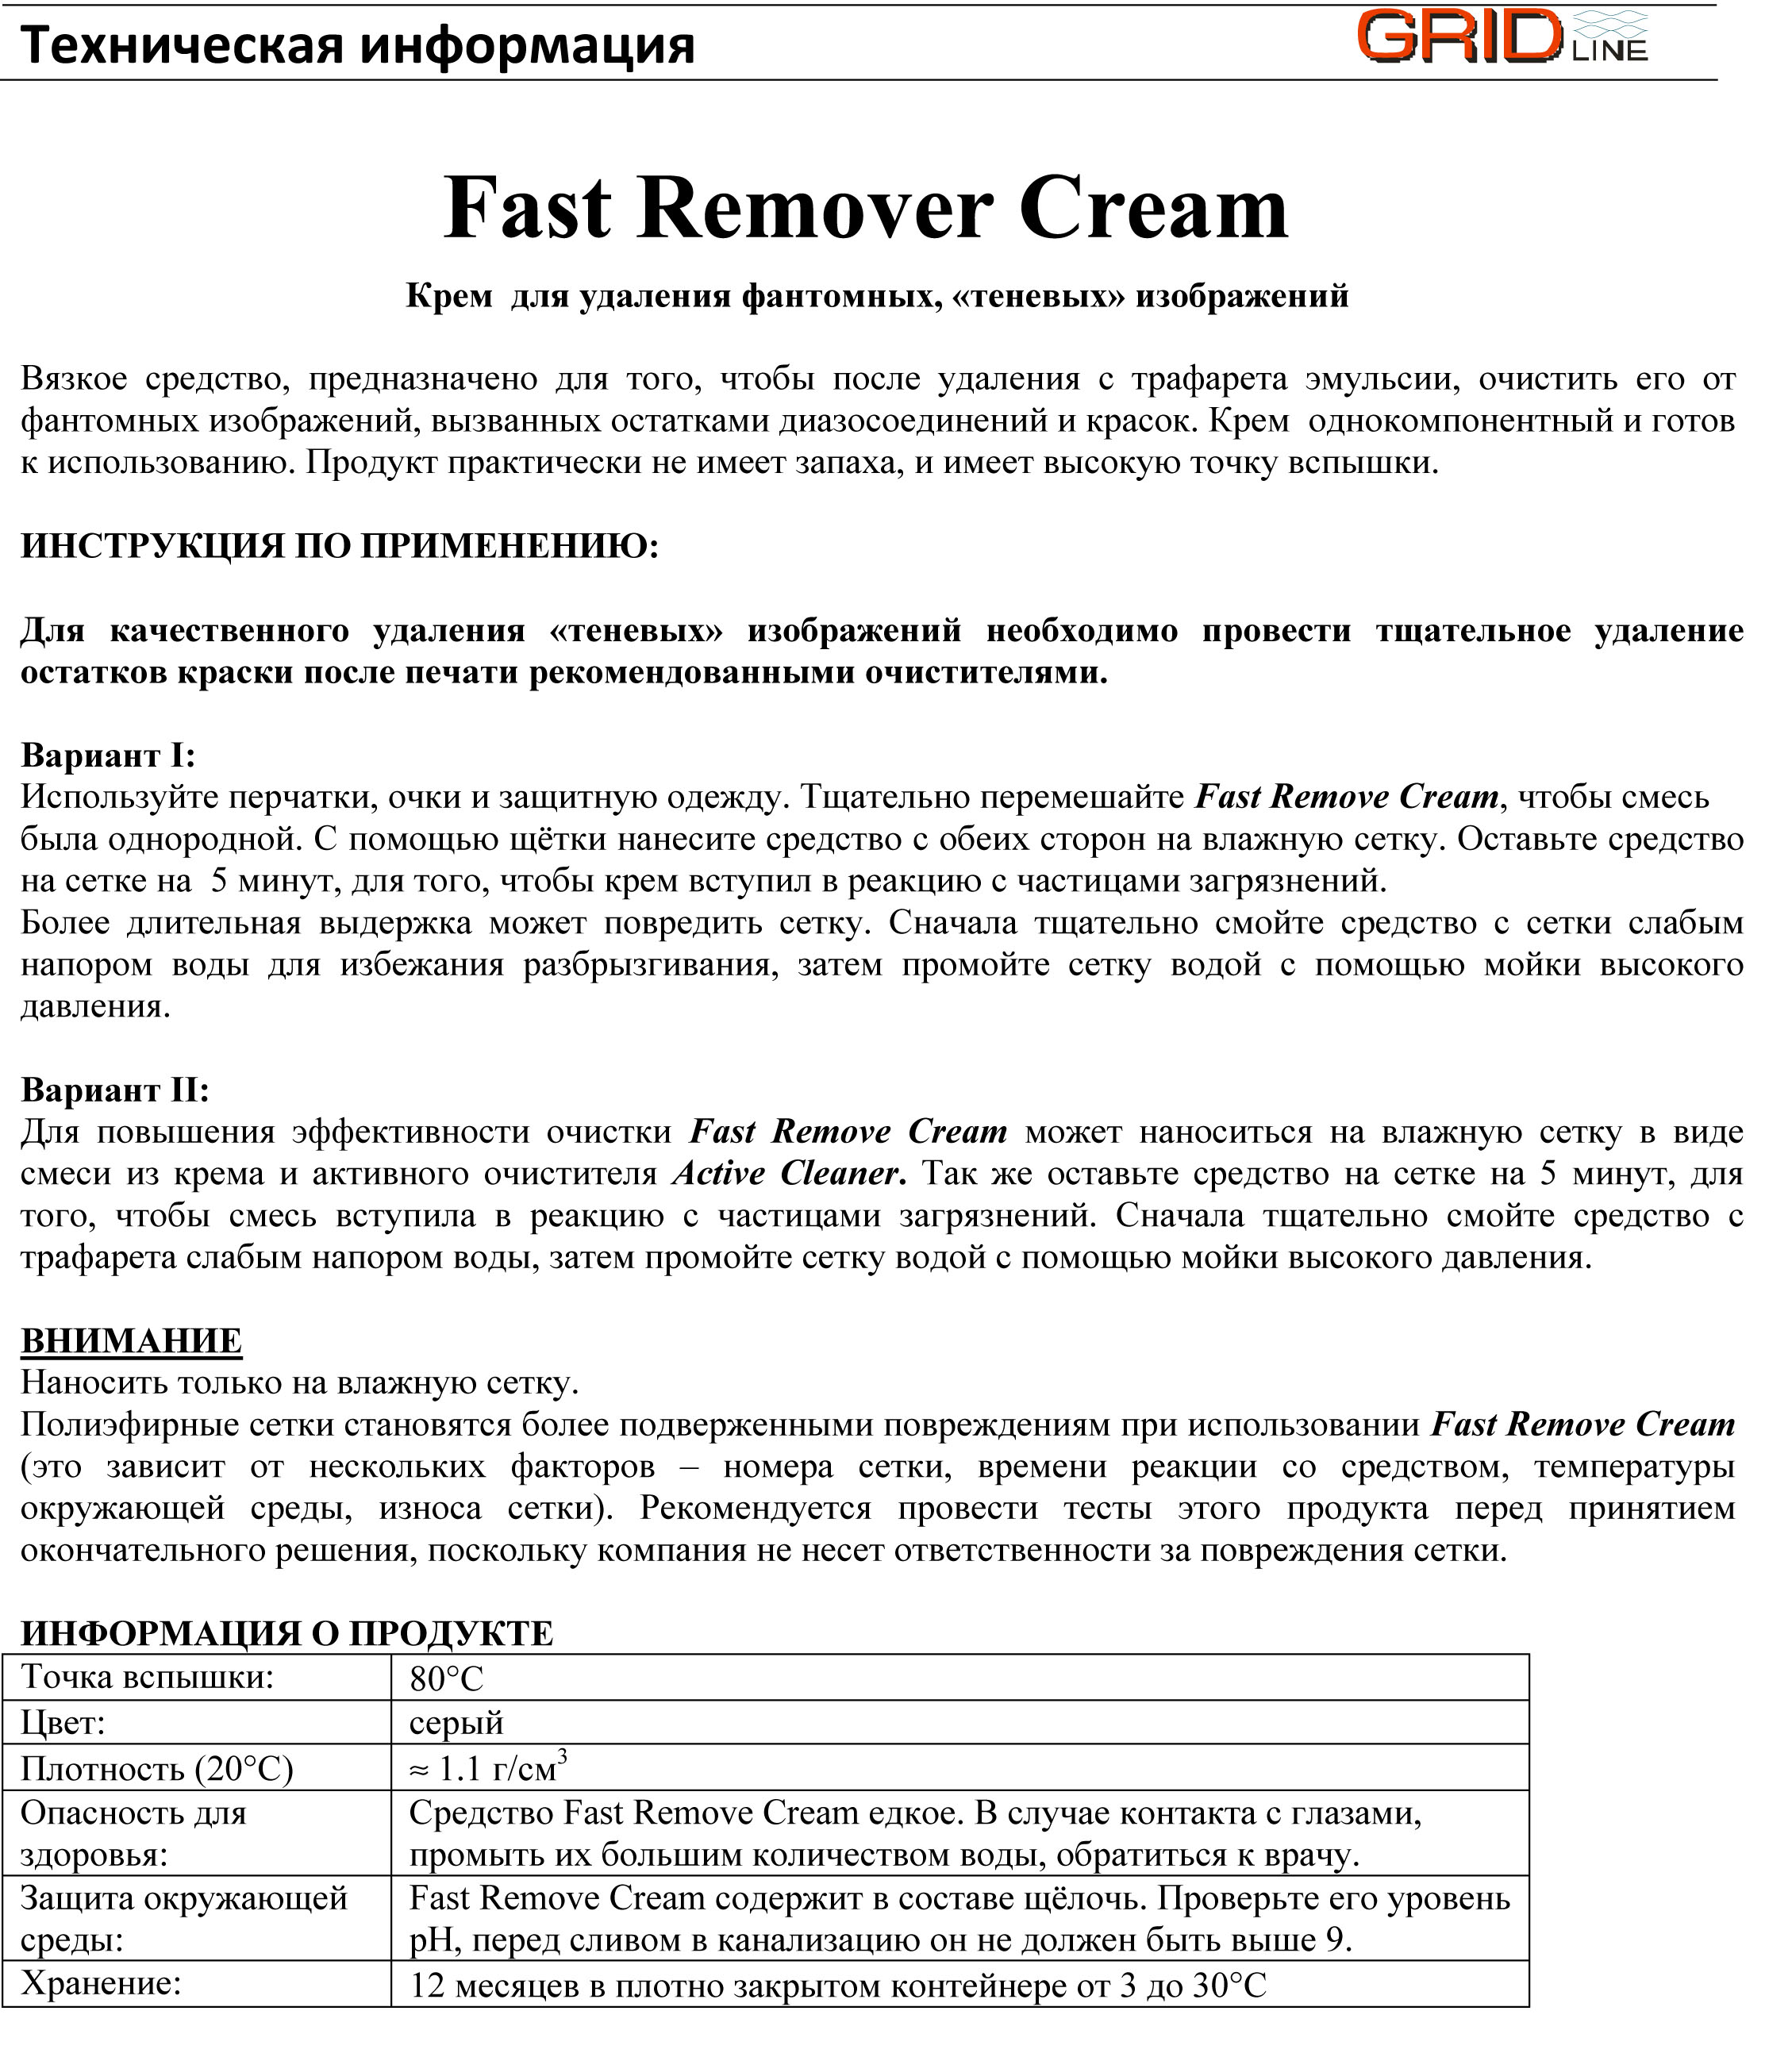 Fast Remover Cream